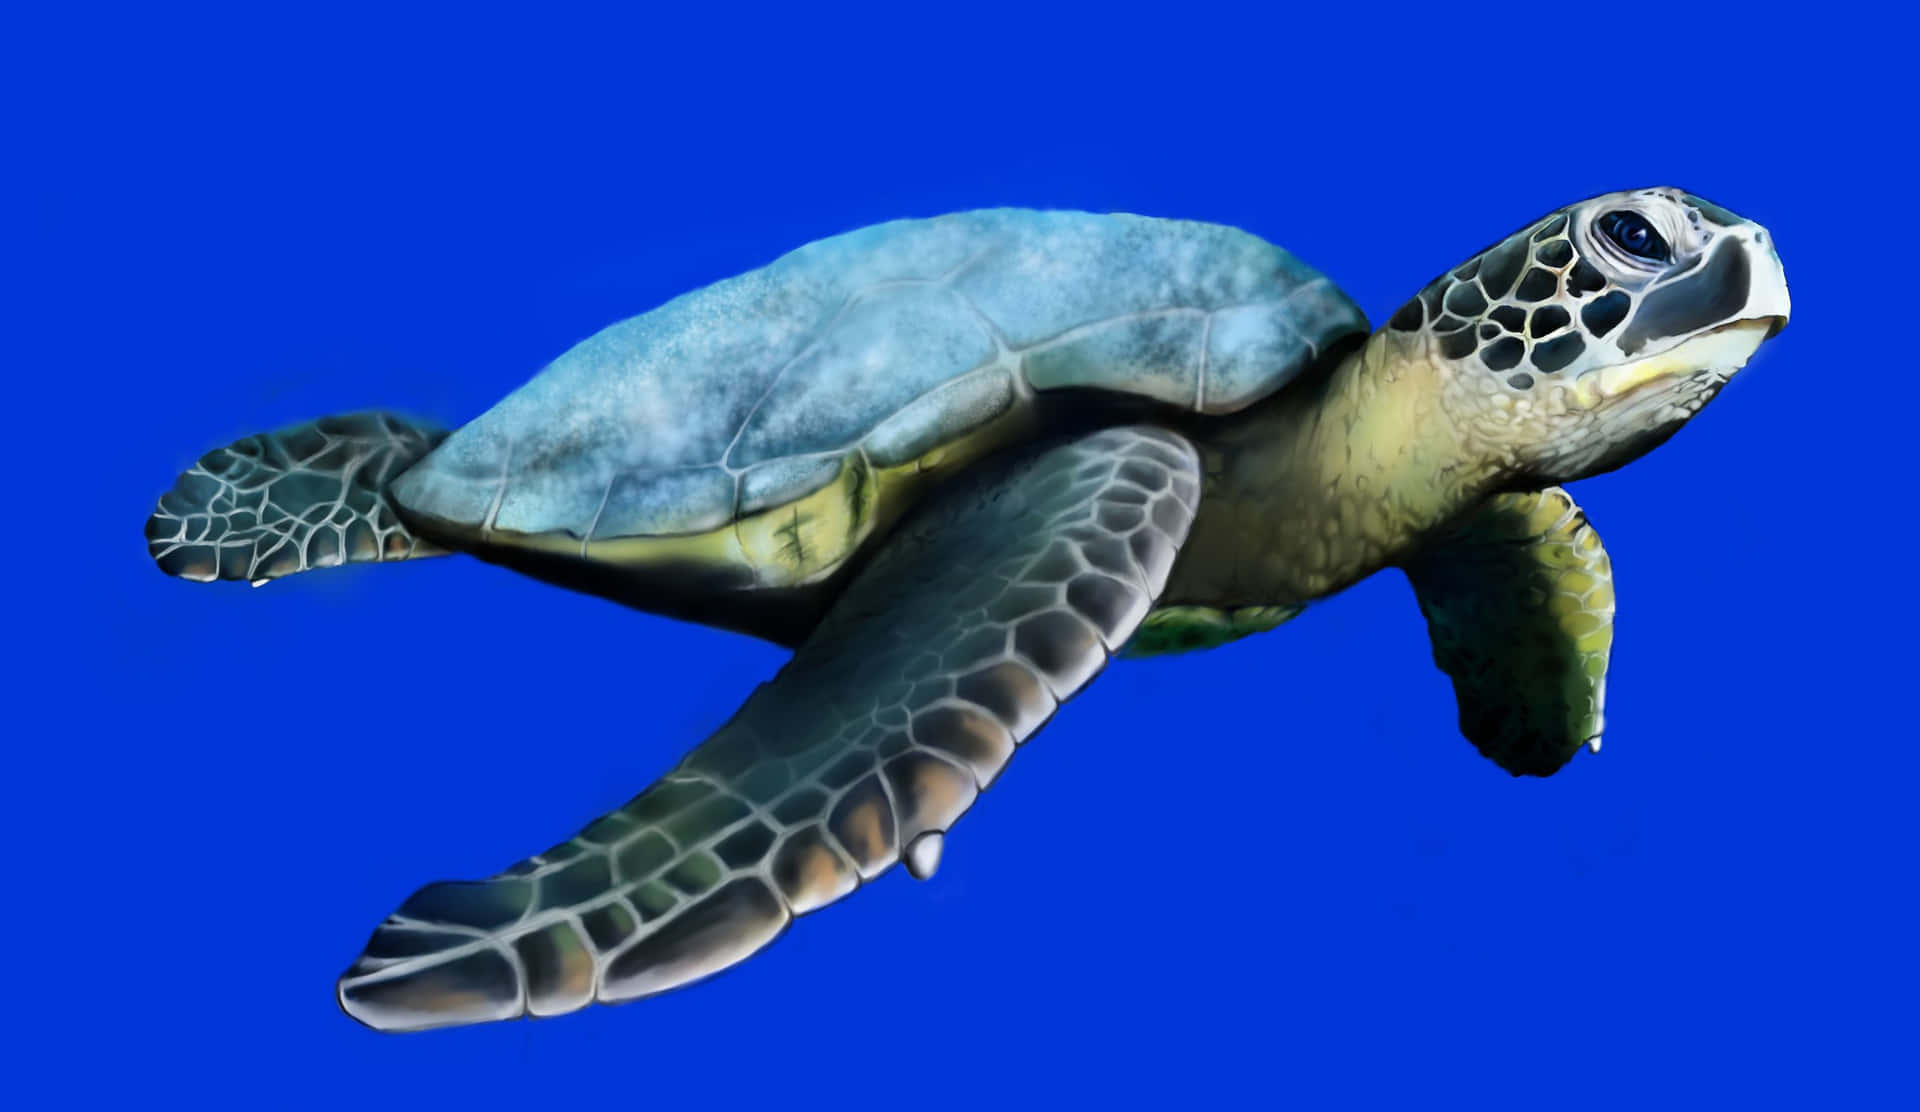 Enhavskildpadde Navigerer Yndefuldt I De Varme Oceanvande.